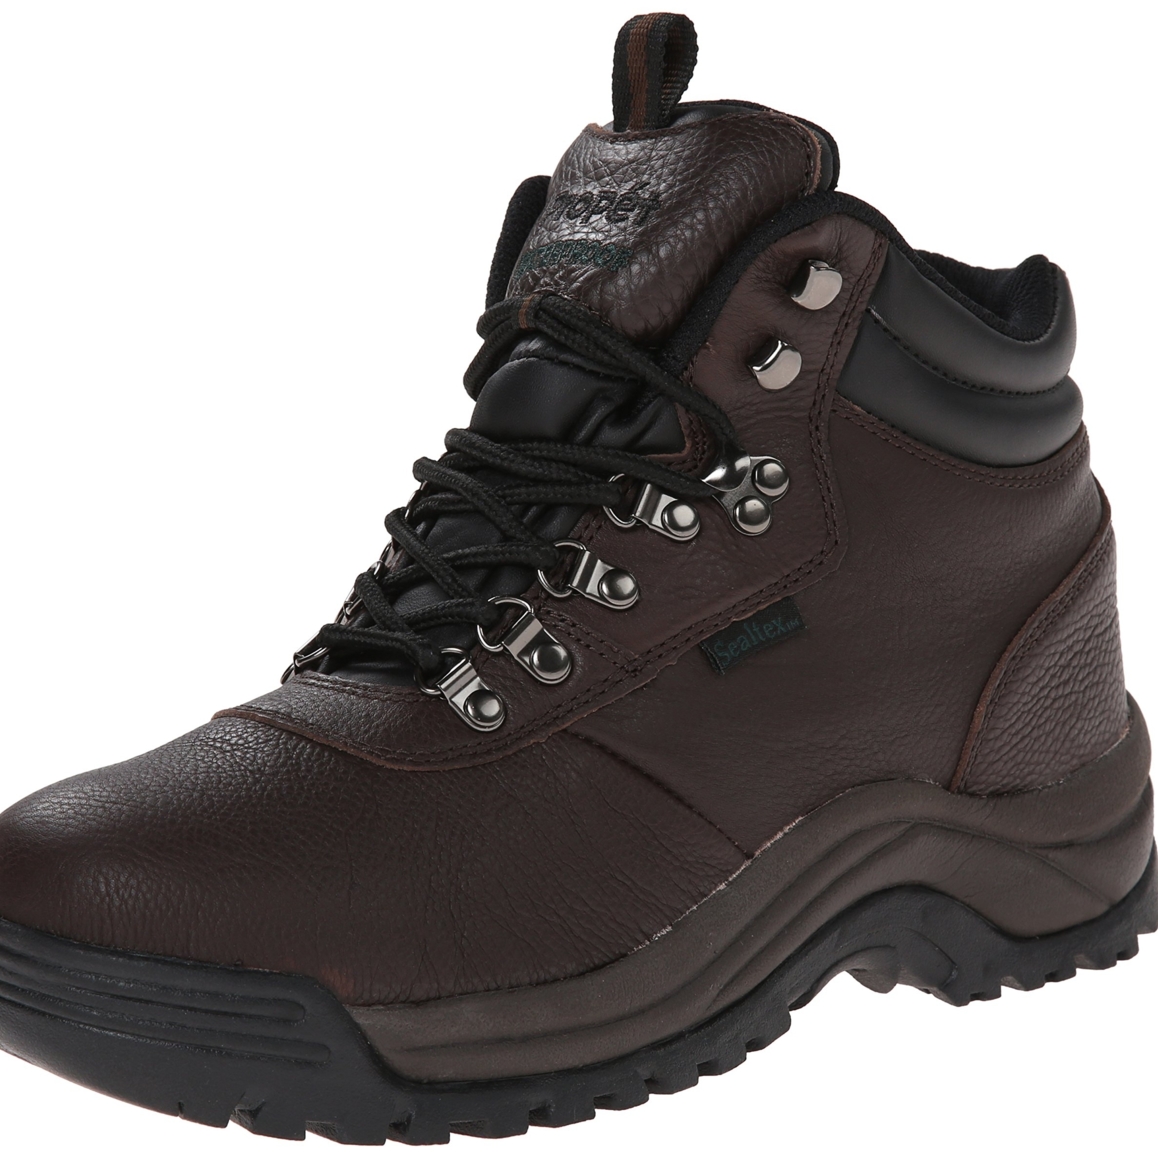 Propet Men's Cliff Walker Hiking Boot Bronco Brown - M3188BRO - BRONCO BROWN, 11.5-D